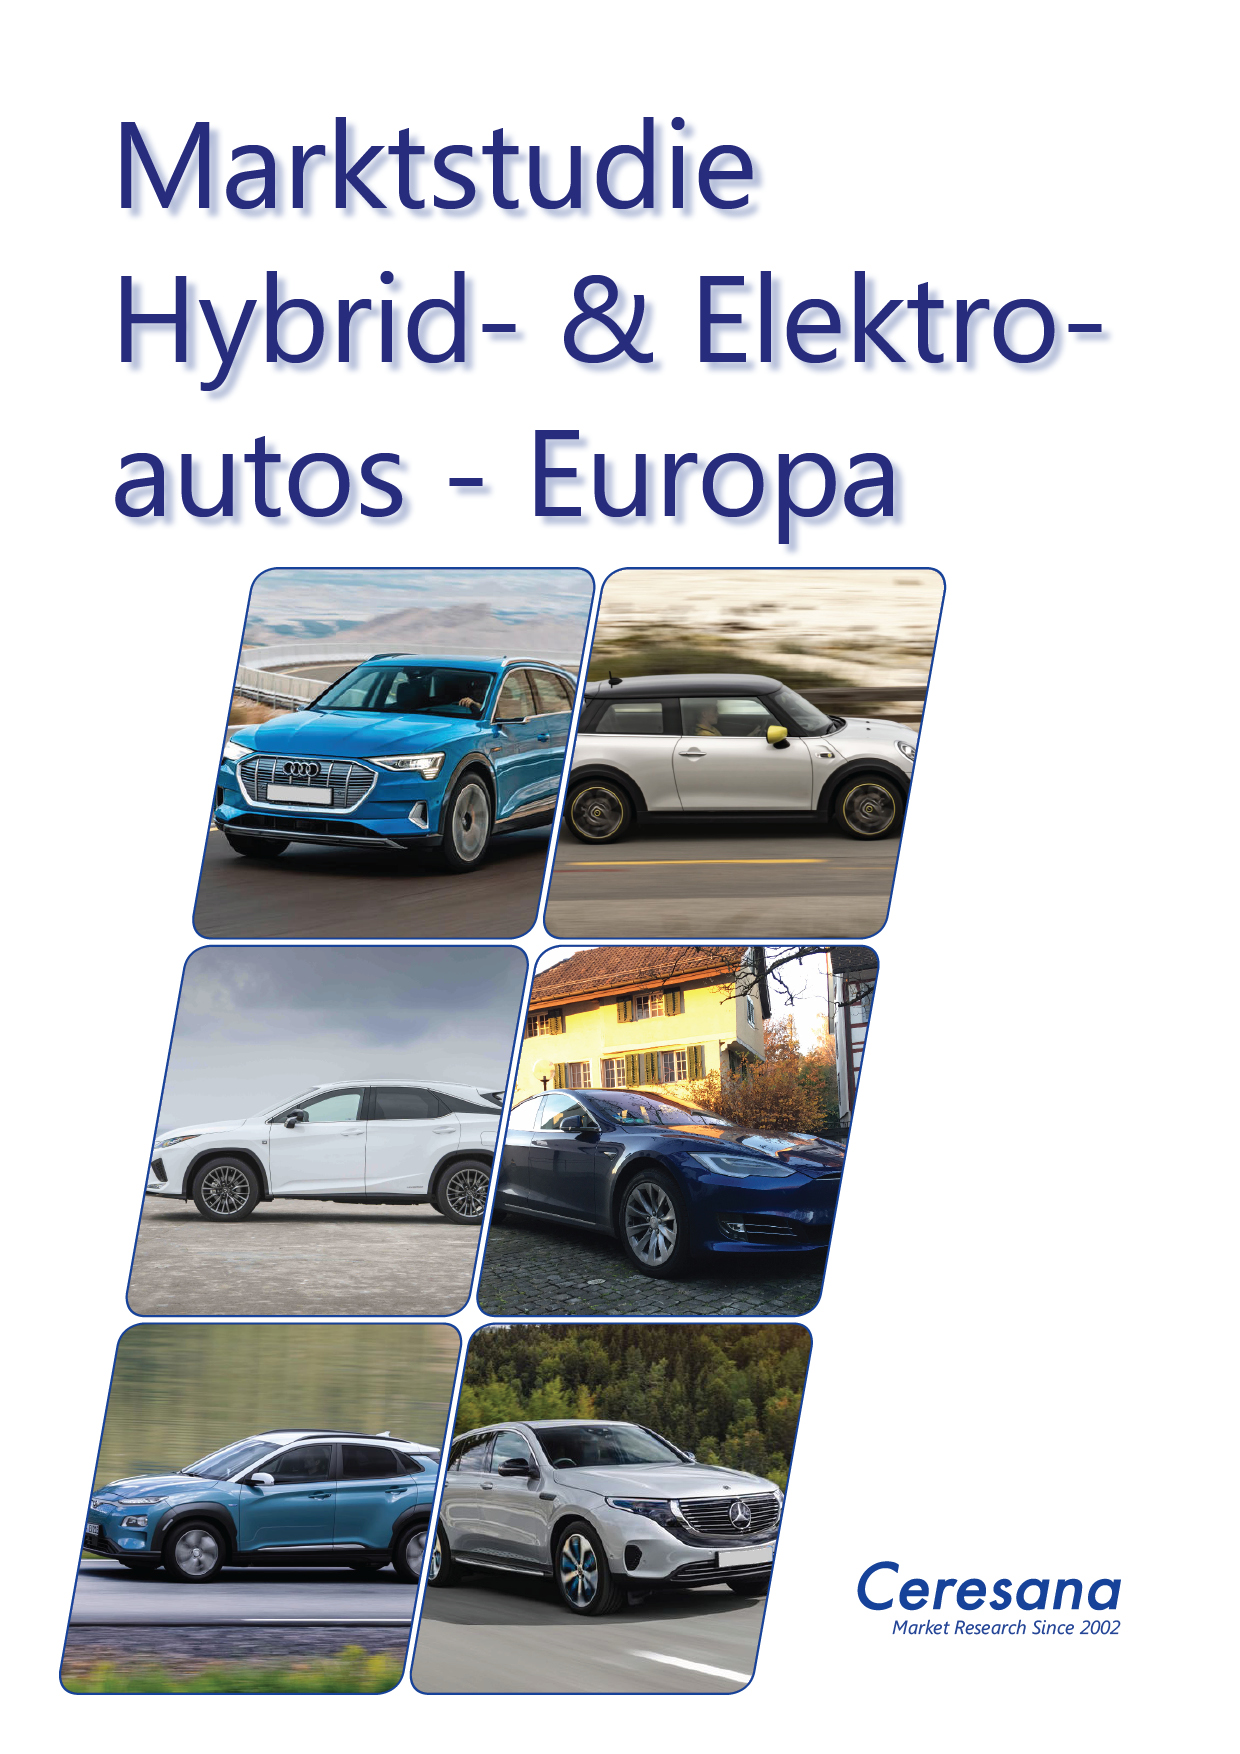 Ceresana Marktstudie Hybrid- und Elektroautos - Europa